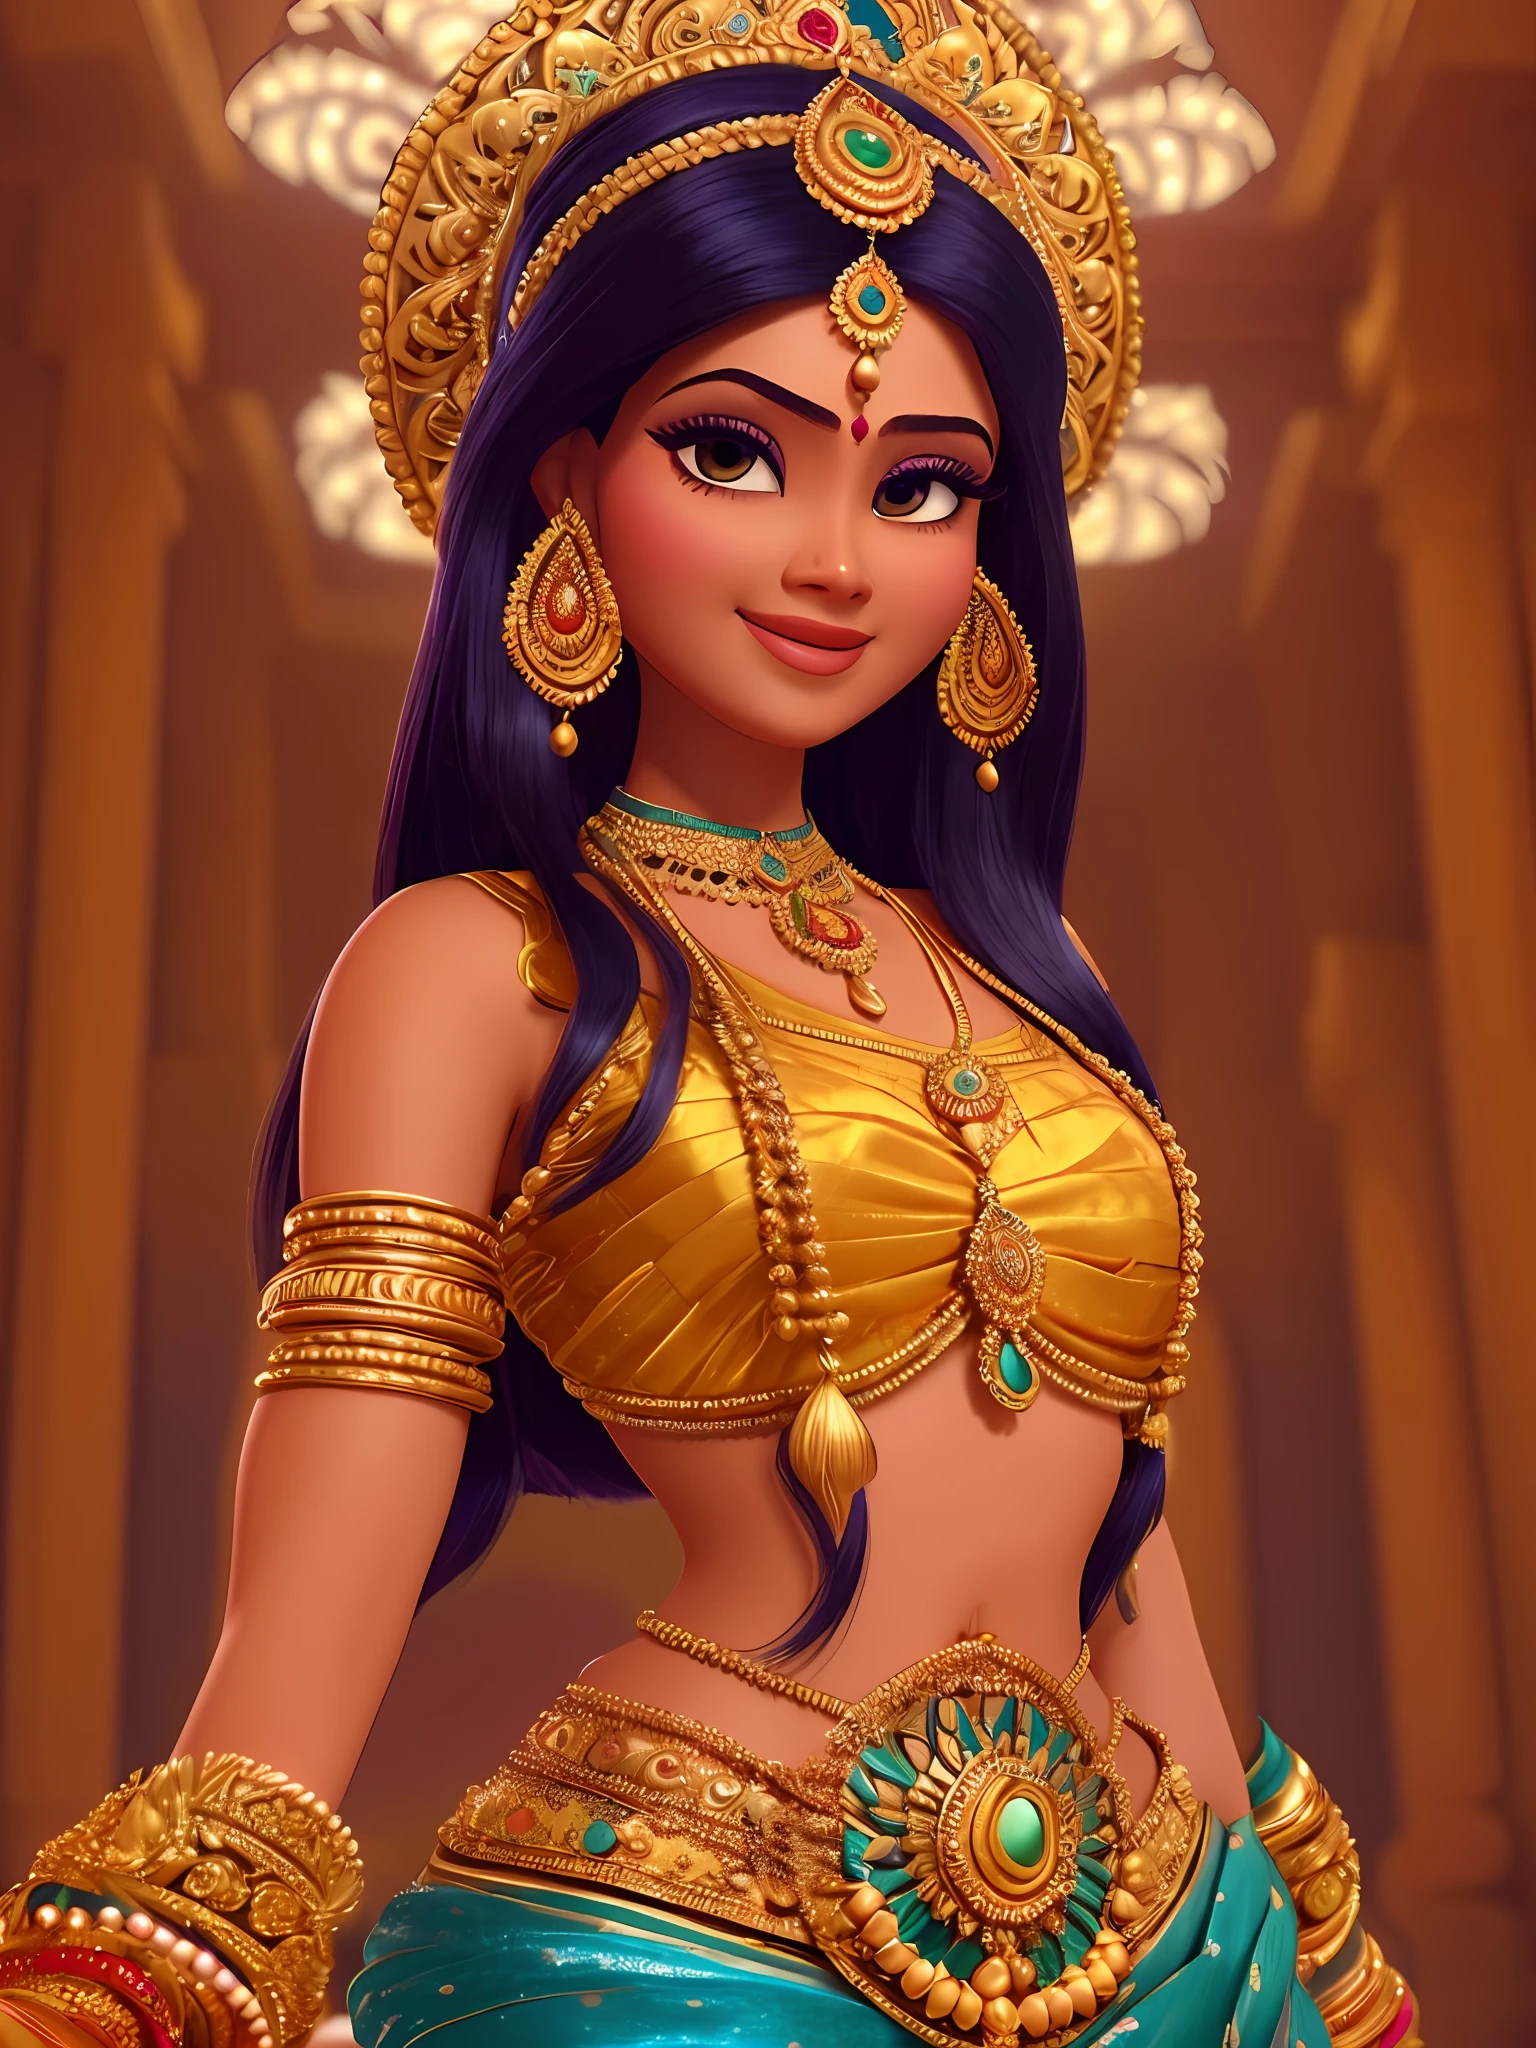 Невероятно красивая индийская молодая женщина, носить богатую индийскую одежду и богатые украшения, в золотом индийском храме, Пиксар, эмоциональные глаза, загадочная улыбка, кинематографический контурный свет, очень женственная фигура, динамическое сопоставление, молодая красивая женщина, очень качественное лицо, изображение, пригодное для использования, лицо шея плечи, красивая, очень женственная женщина, стилизованные динамические складки, спокойная женщина, Пиксар